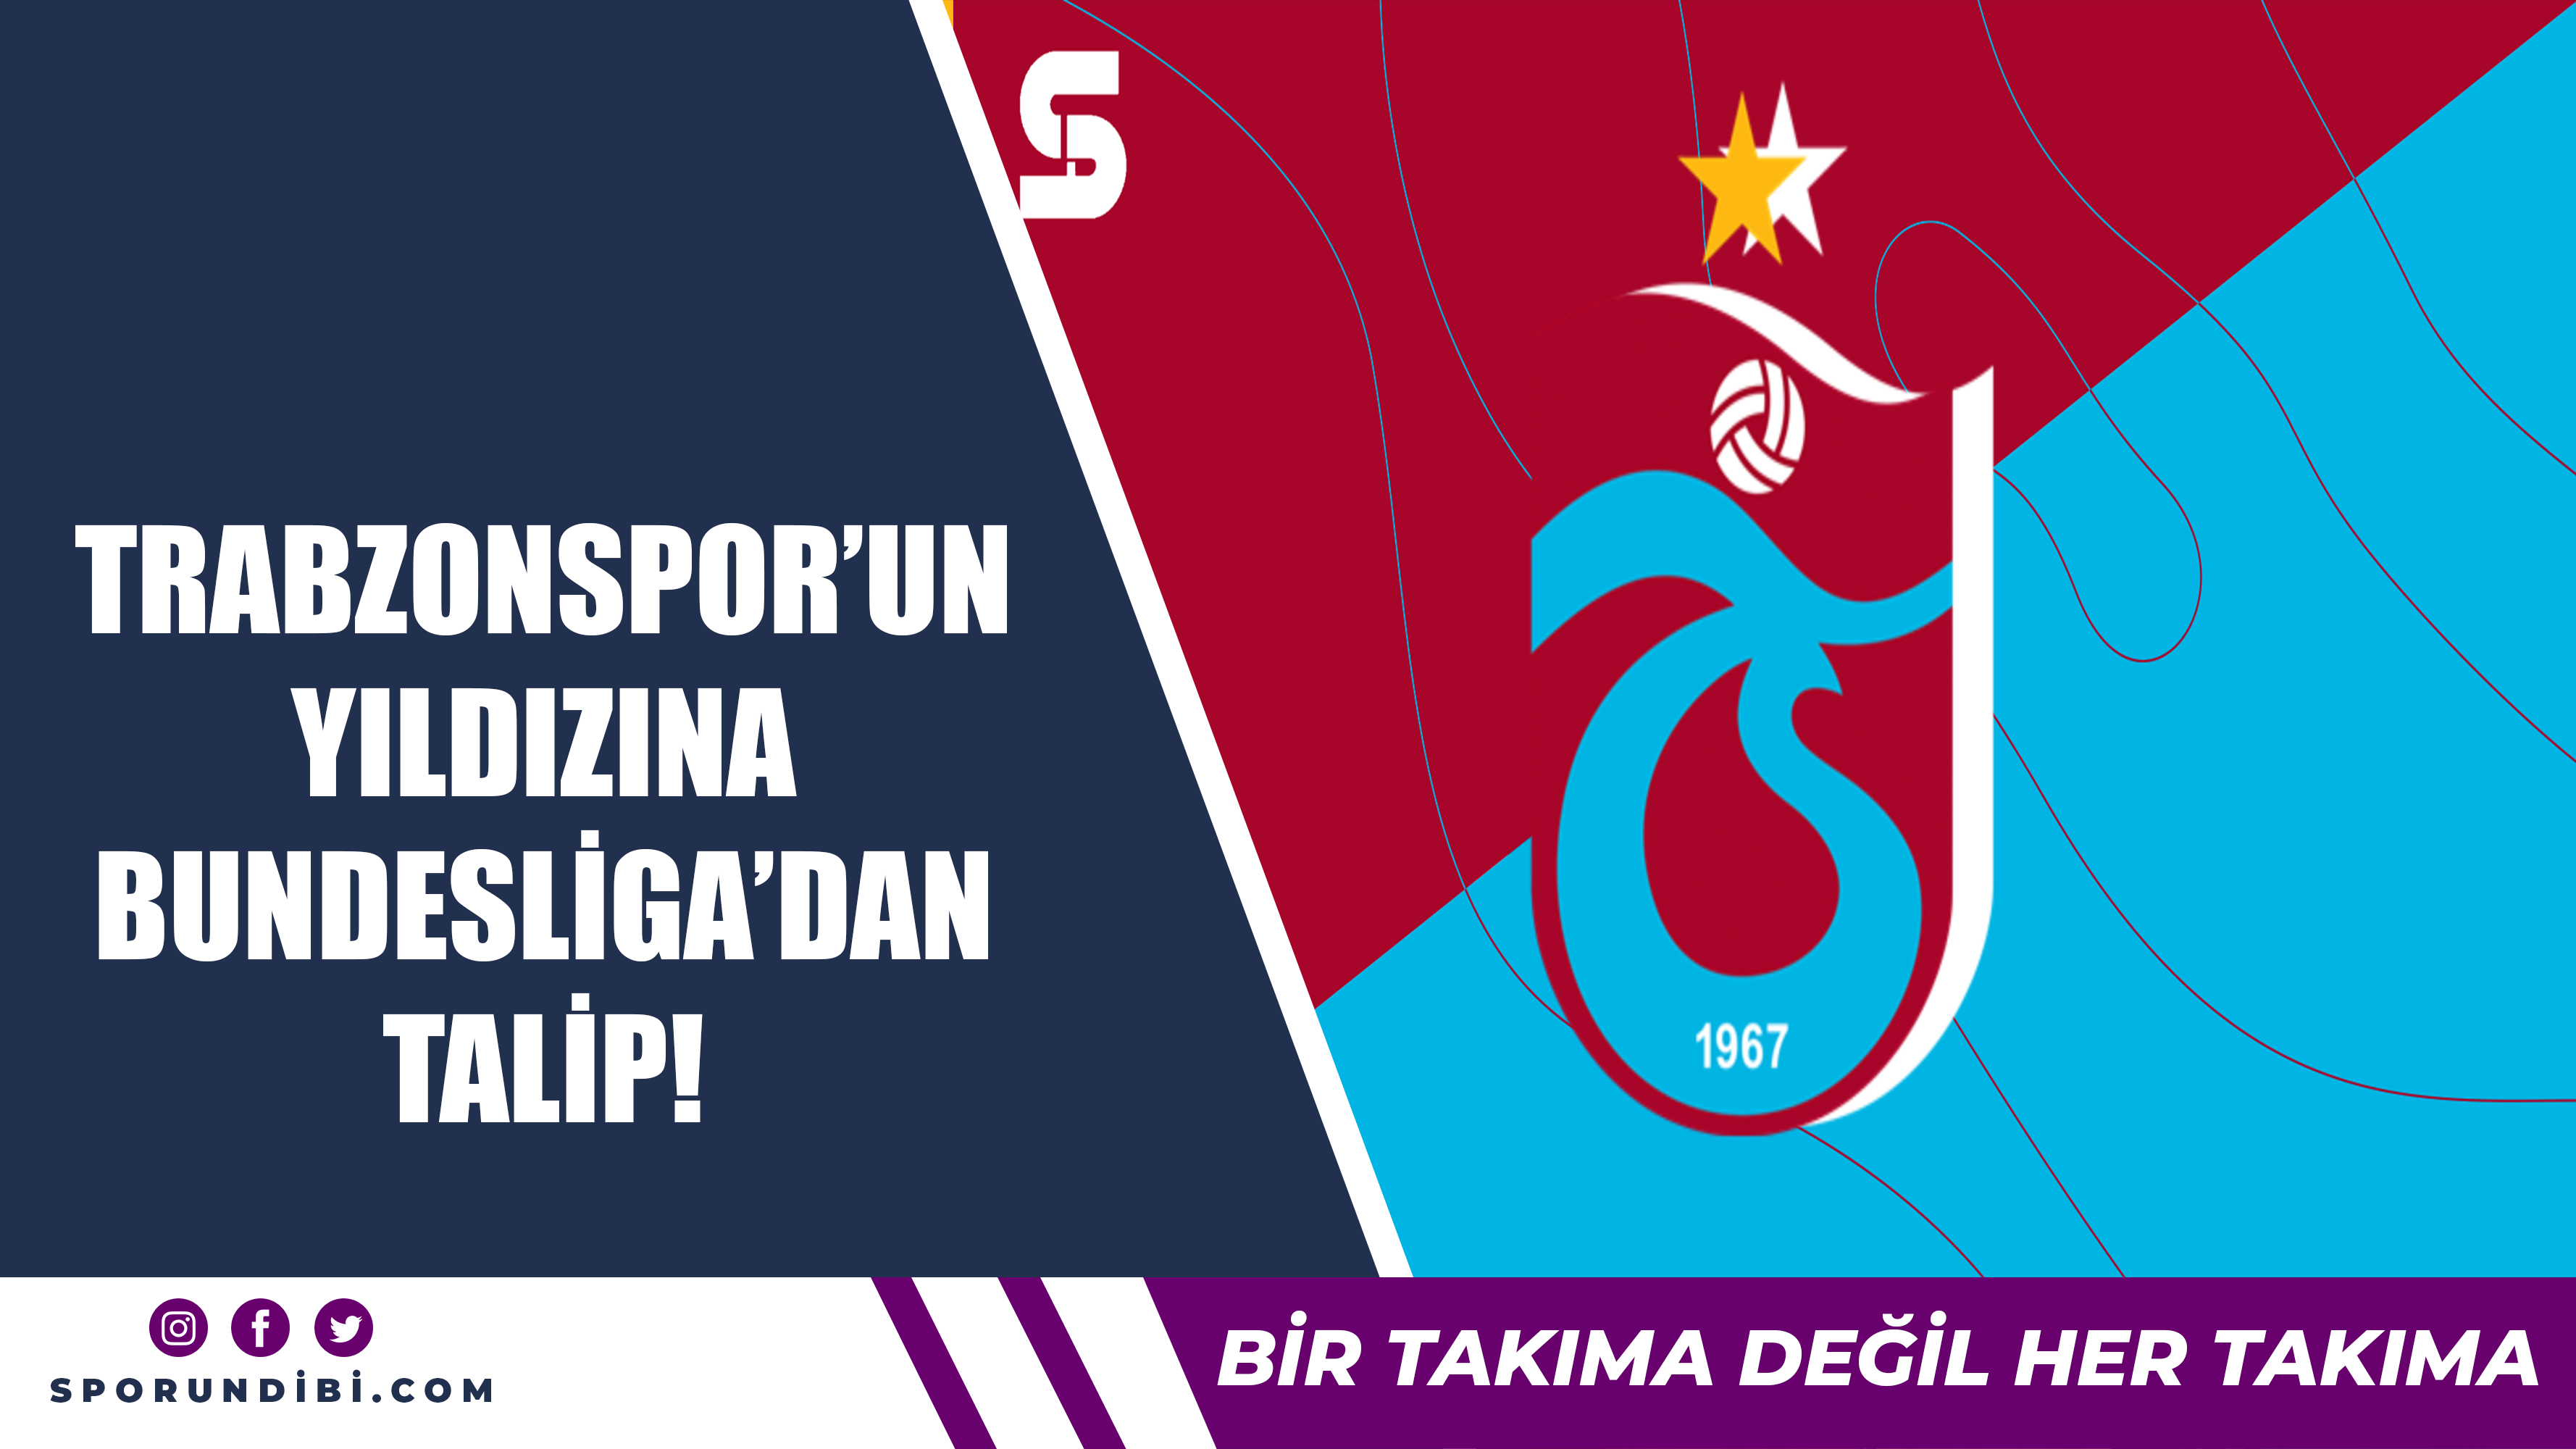 Trabzonspor'un yıldızına Bundesliga'dan talip!